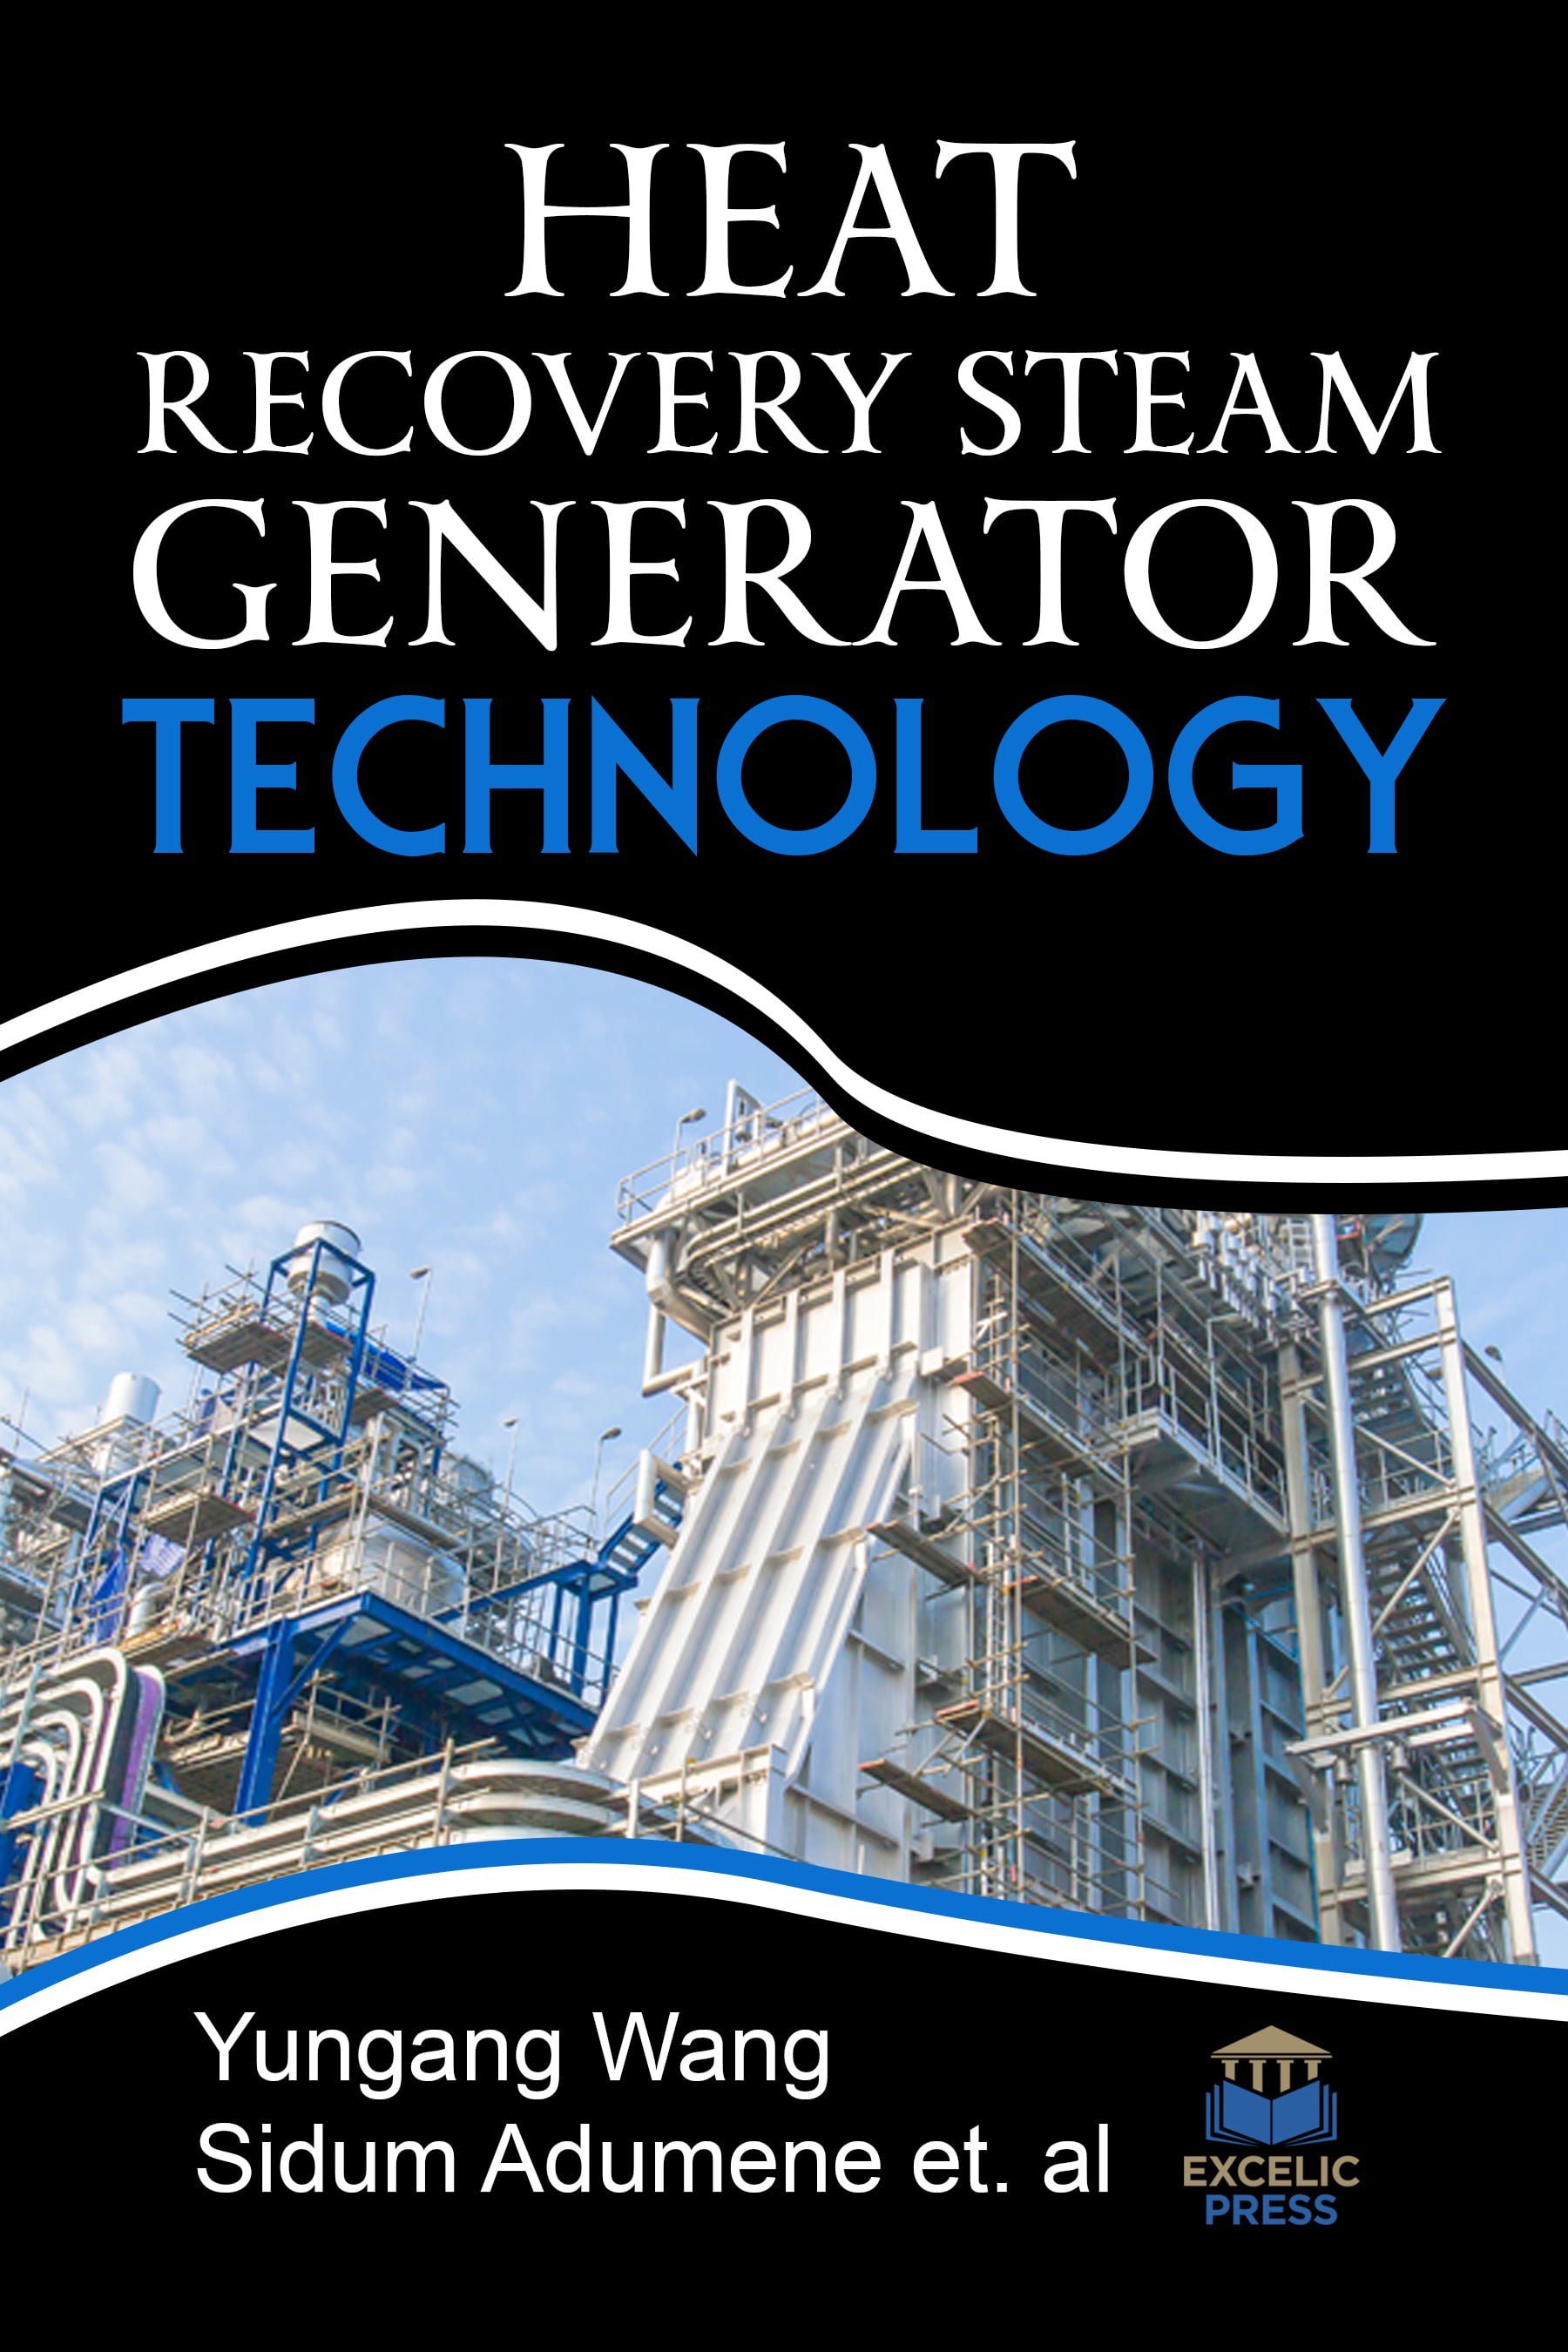 خرید ایبوک Heat Recovery Steam Generator Technology دانلود کتاب تکنولوژی تولید ژنراتور احیا کننده گرما download PDF خرید کتاب از امازون